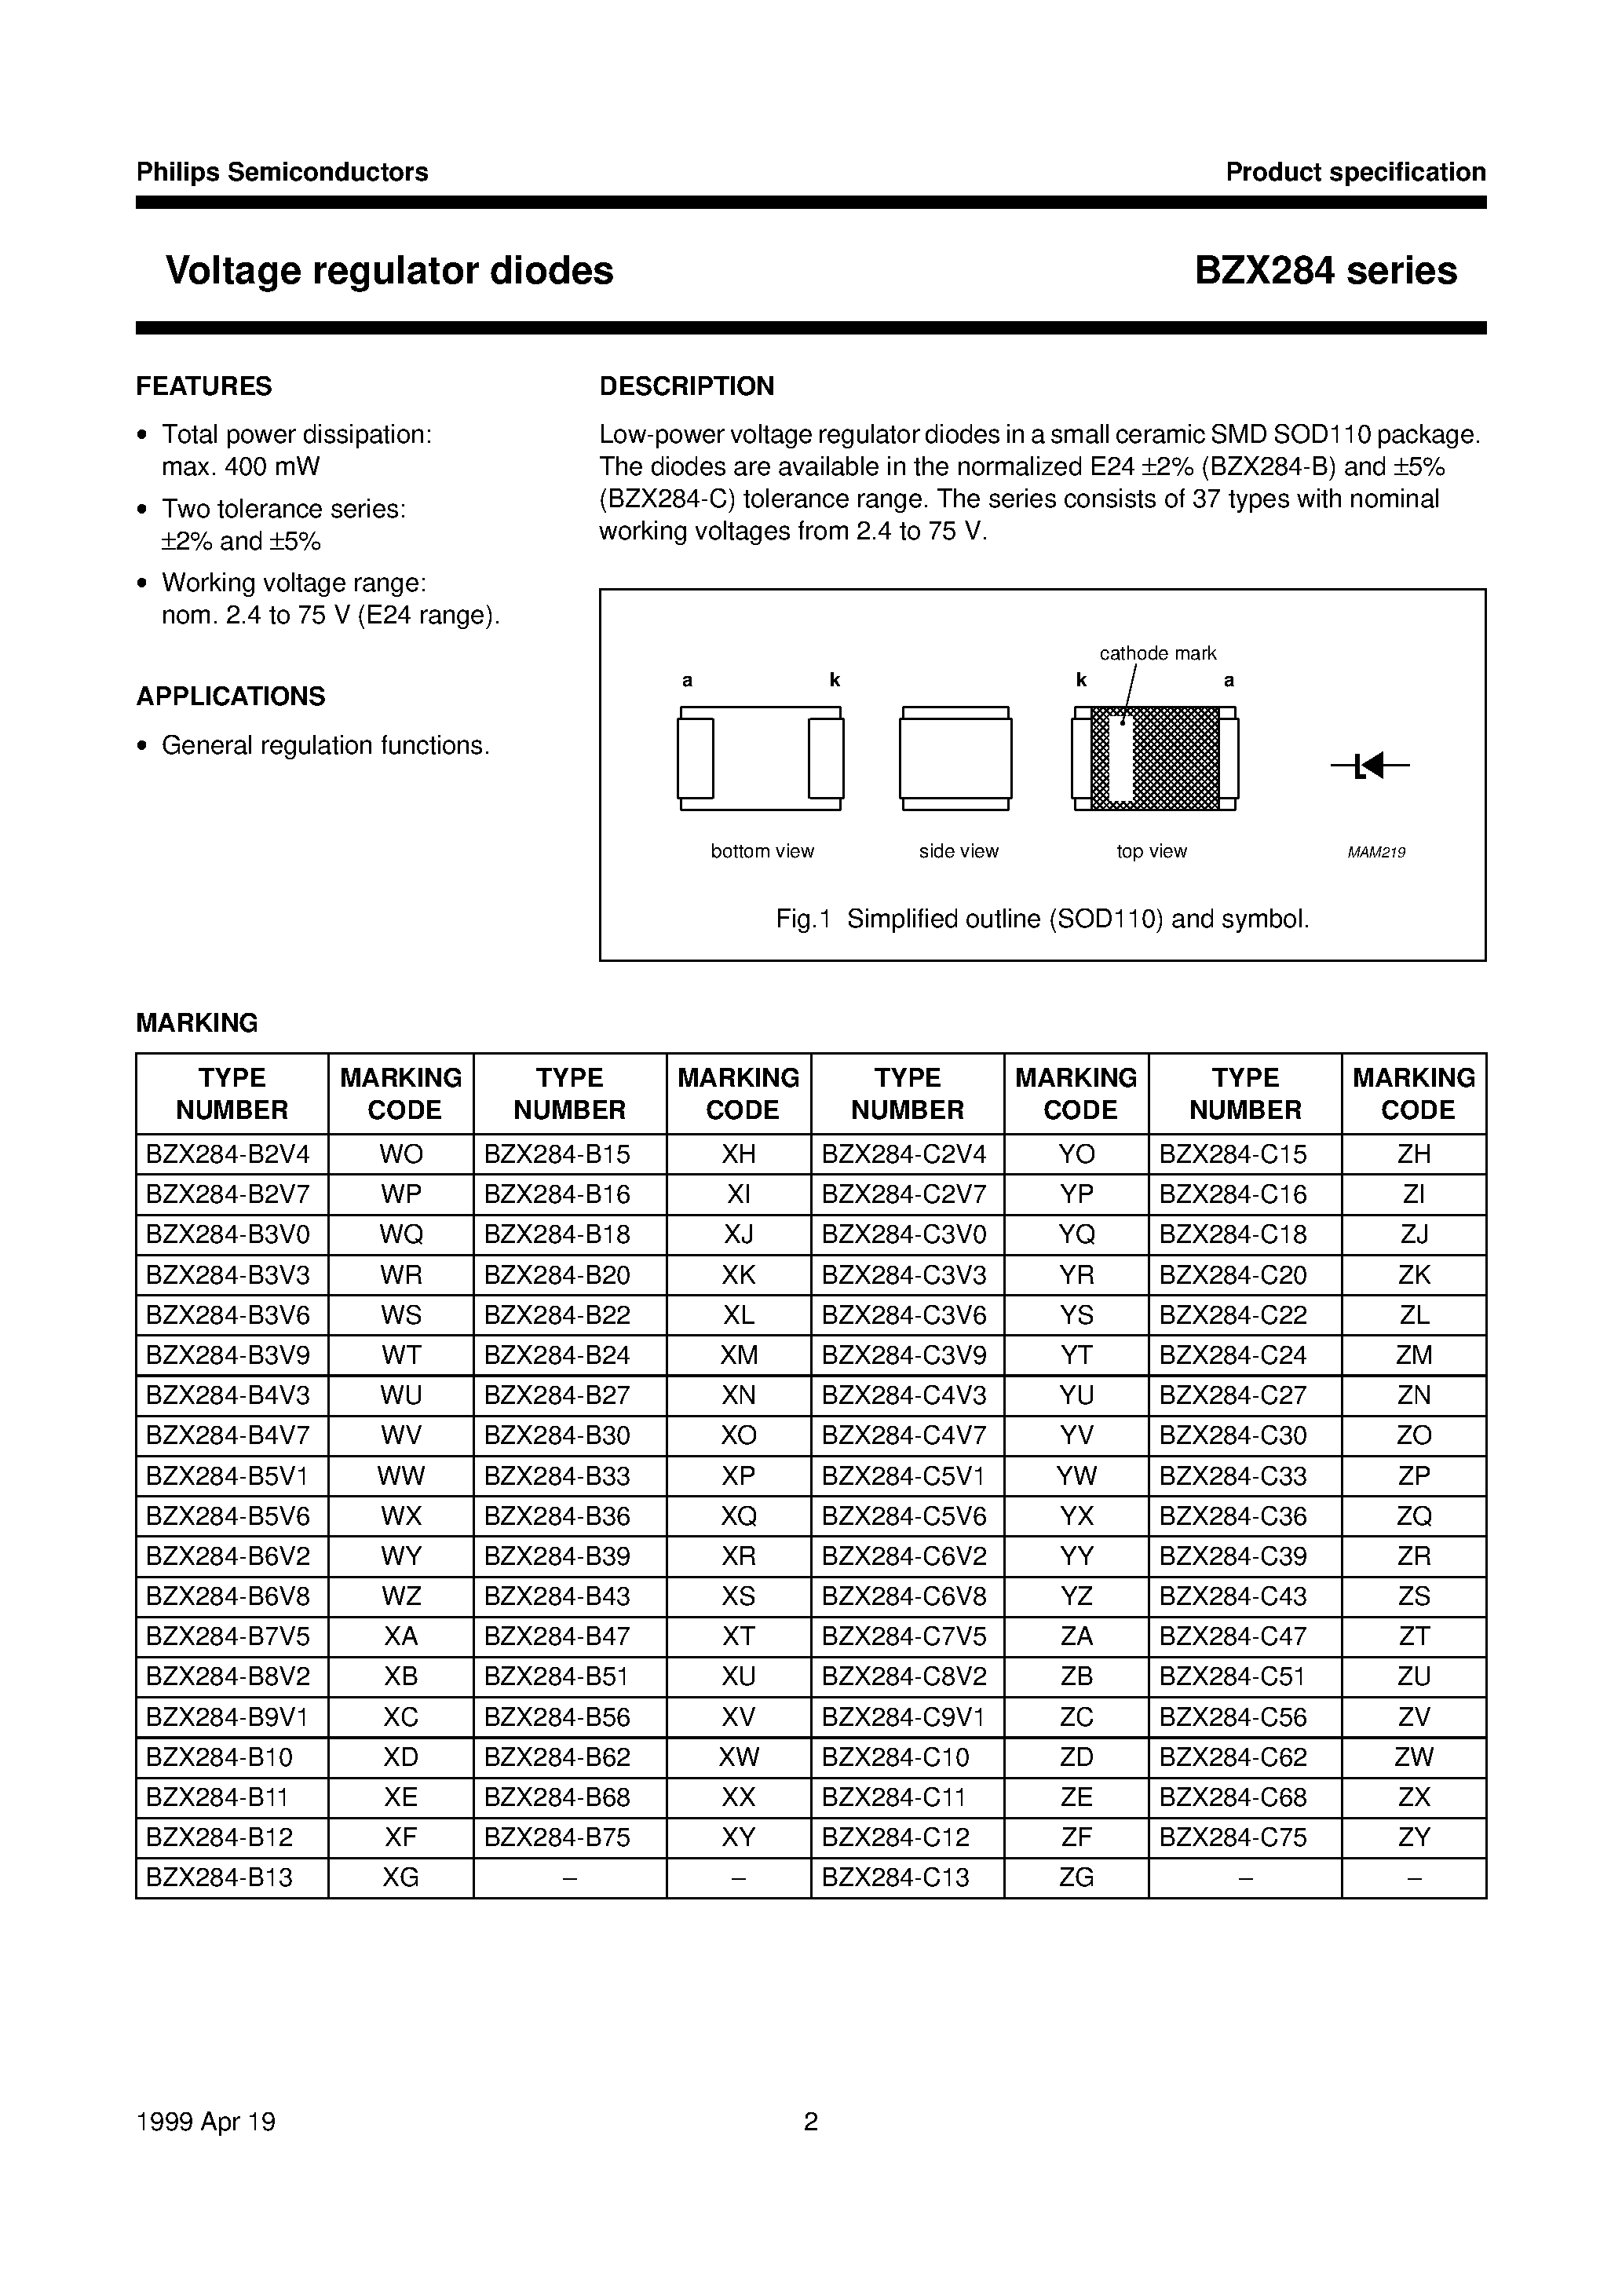 Datasheet BZX284-B11 - Voltage regulator diodes page 2